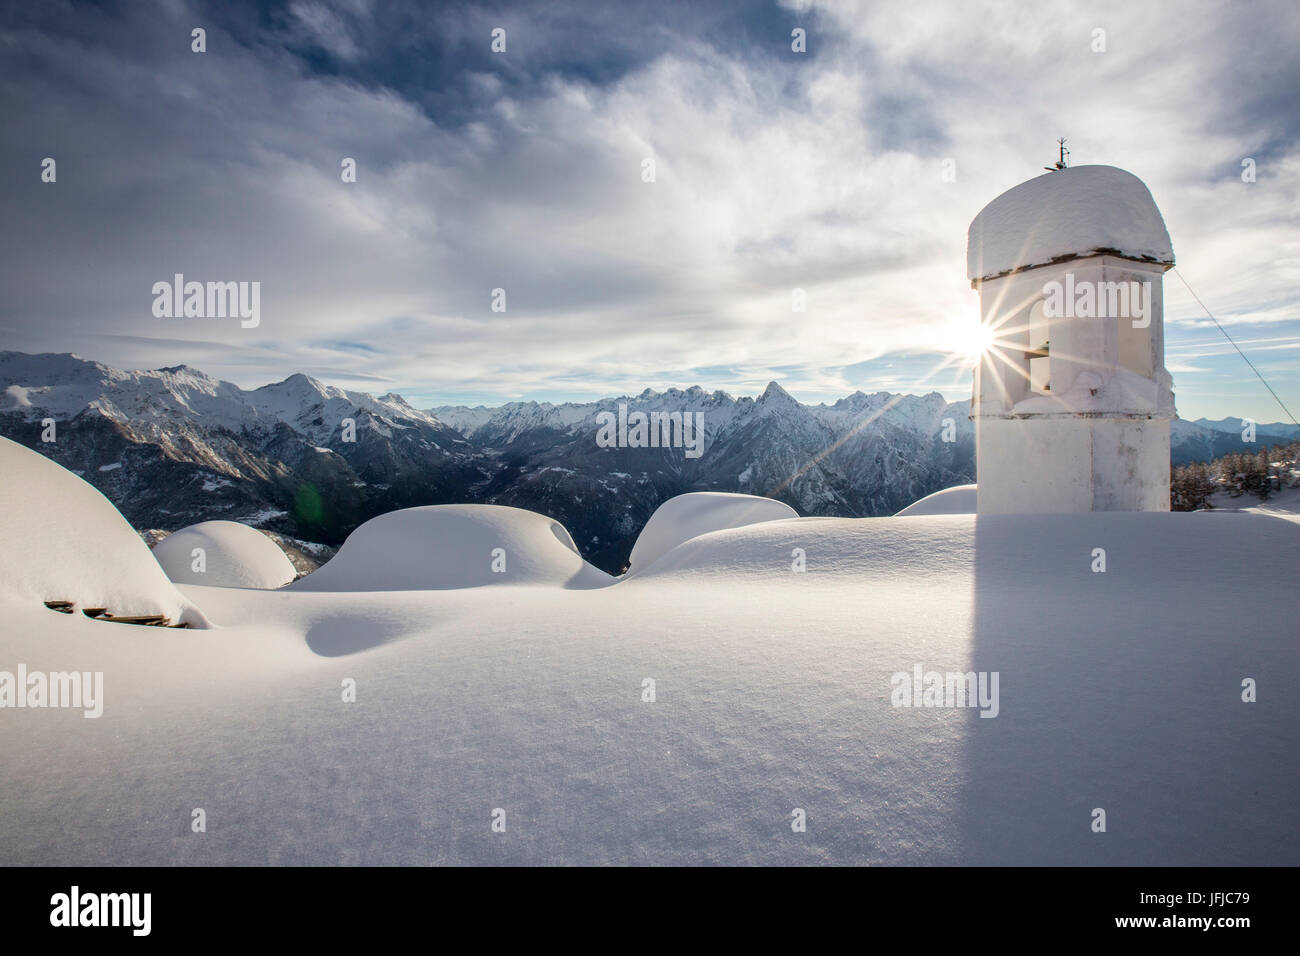 Inverno il sole splende dietro il pittoresco campanile presso l'Alpe Scima dopo una nevicata, Valchiavenna, Valtellina Lombardia Italia Europa Foto Stock